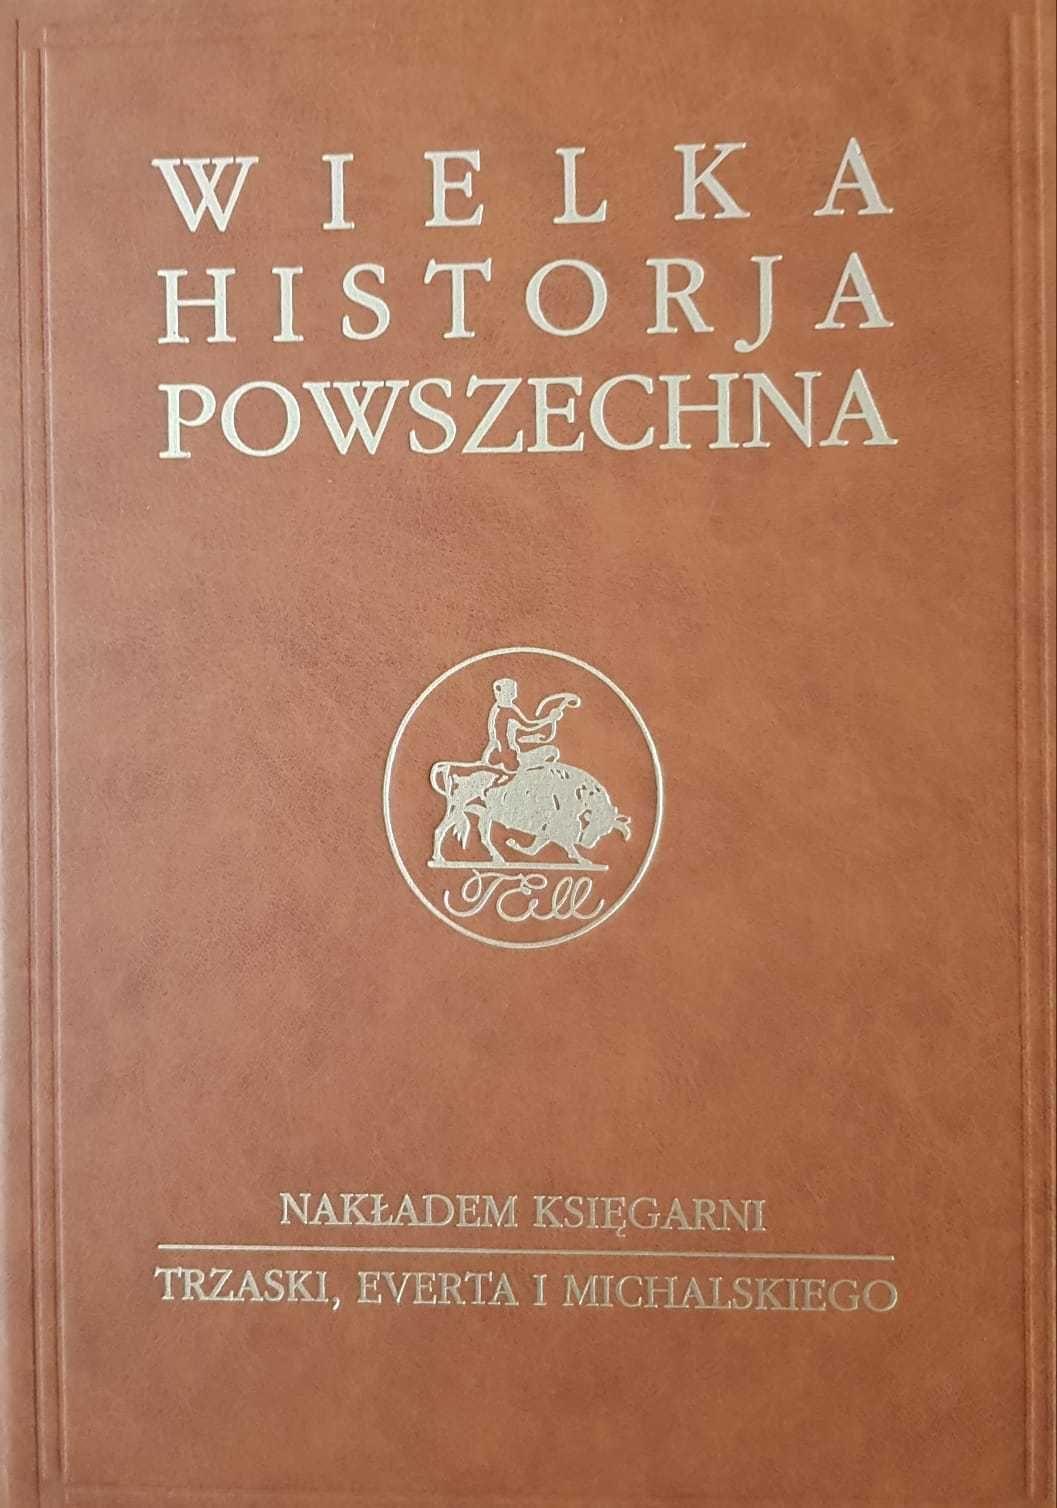 Wielka Historia Powszechna - komplet 33 tomów ZESTAW